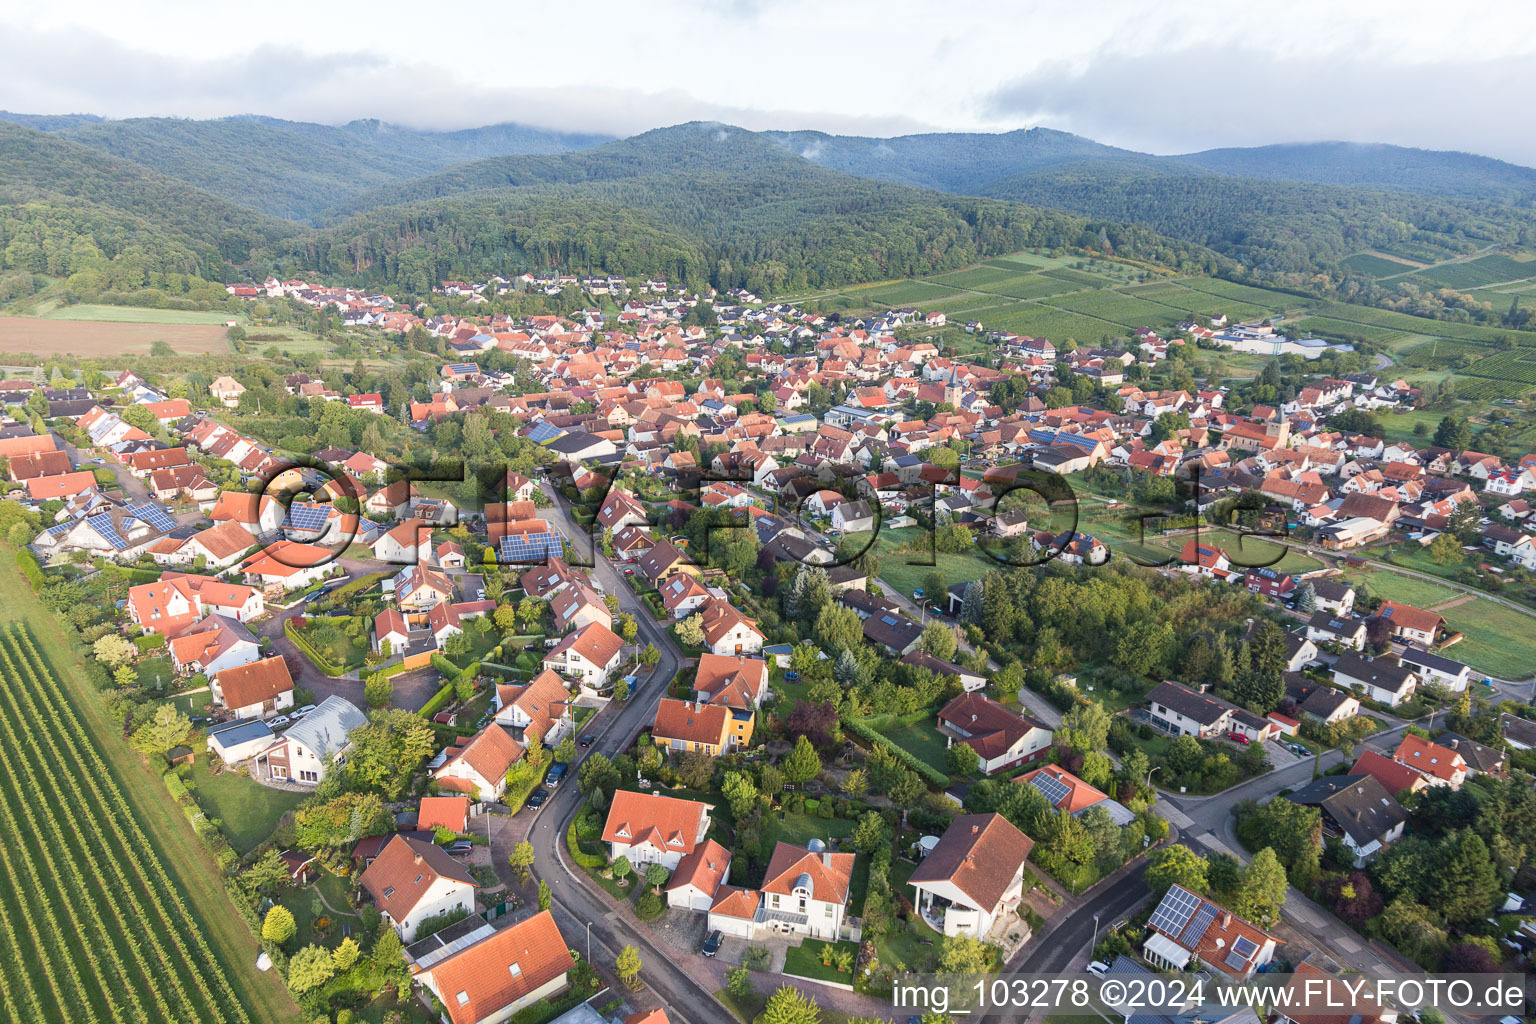 Luftbild von Ortsansicht der Straßen und Häuser der Wohngebiete in Oberotterbach im Bundesland Rheinland-Pfalz, Deutschland